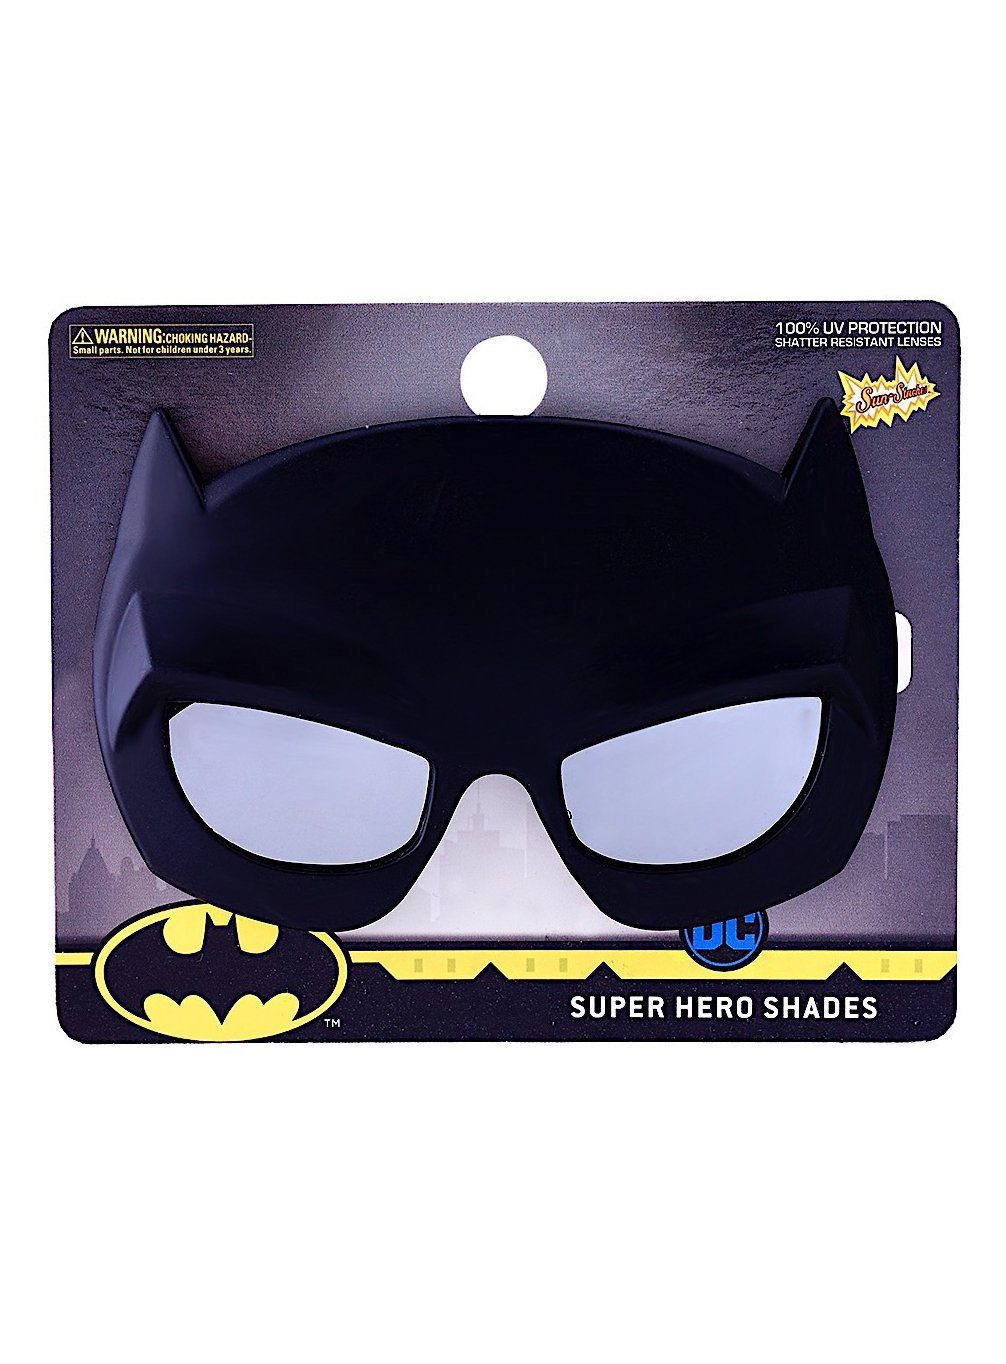 Sun Staches Kostüm Batman Kinder Partybrille, Für Leute mit Durchblick: lizenzierte Funbrille im DC-Design